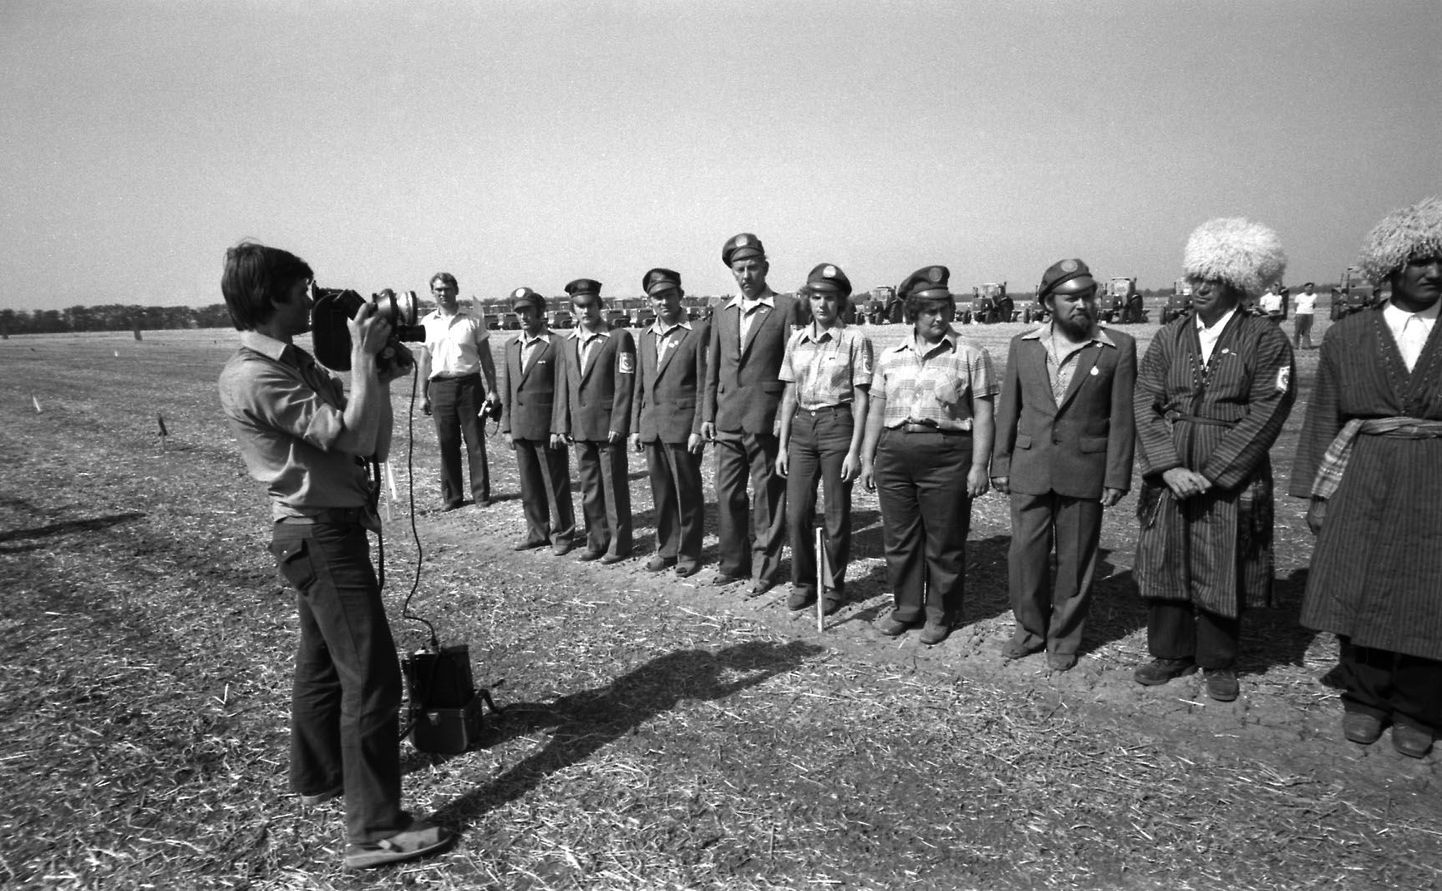 Nõukogude Liidu rahvaste vennaliku pere künnimehi ja -naisi (vasakul Eesti delegatsioon) filmib Peeter Ülevain.